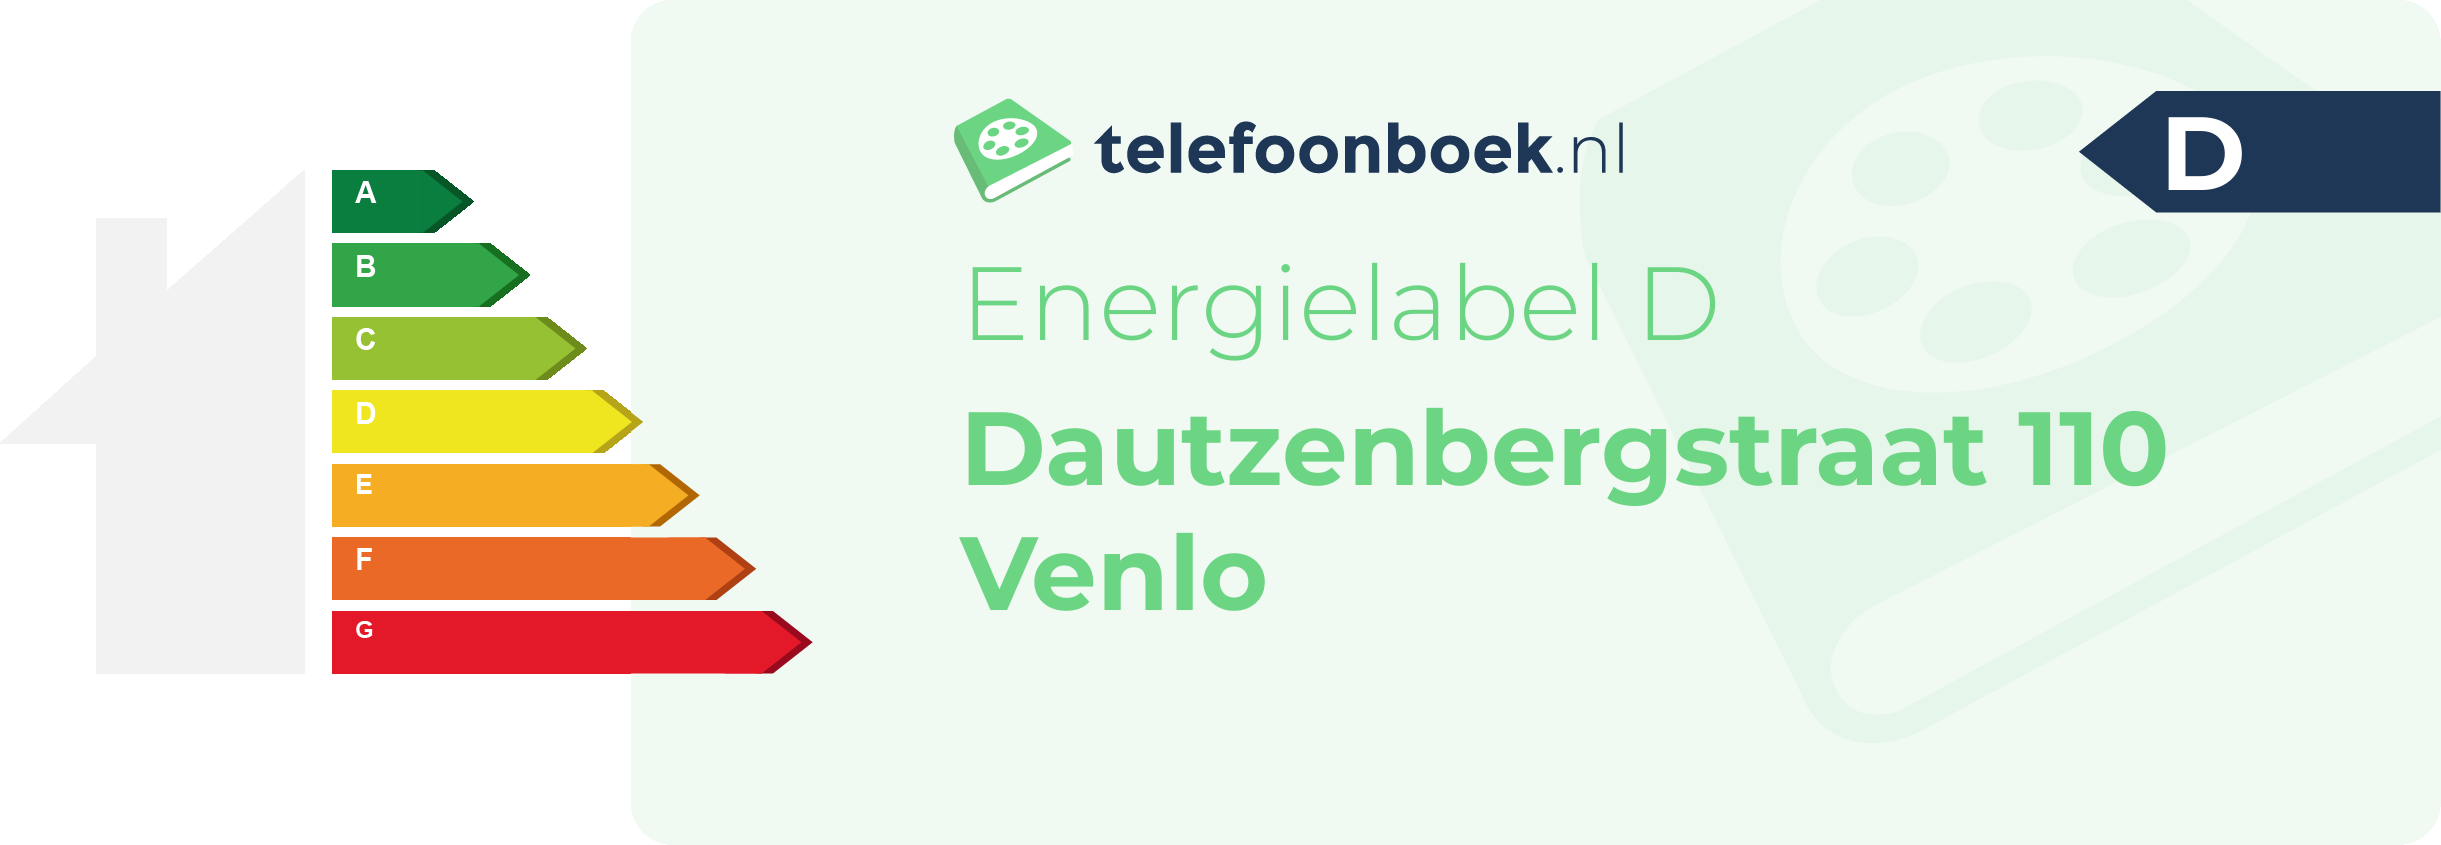 Energielabel Dautzenbergstraat 110 Venlo